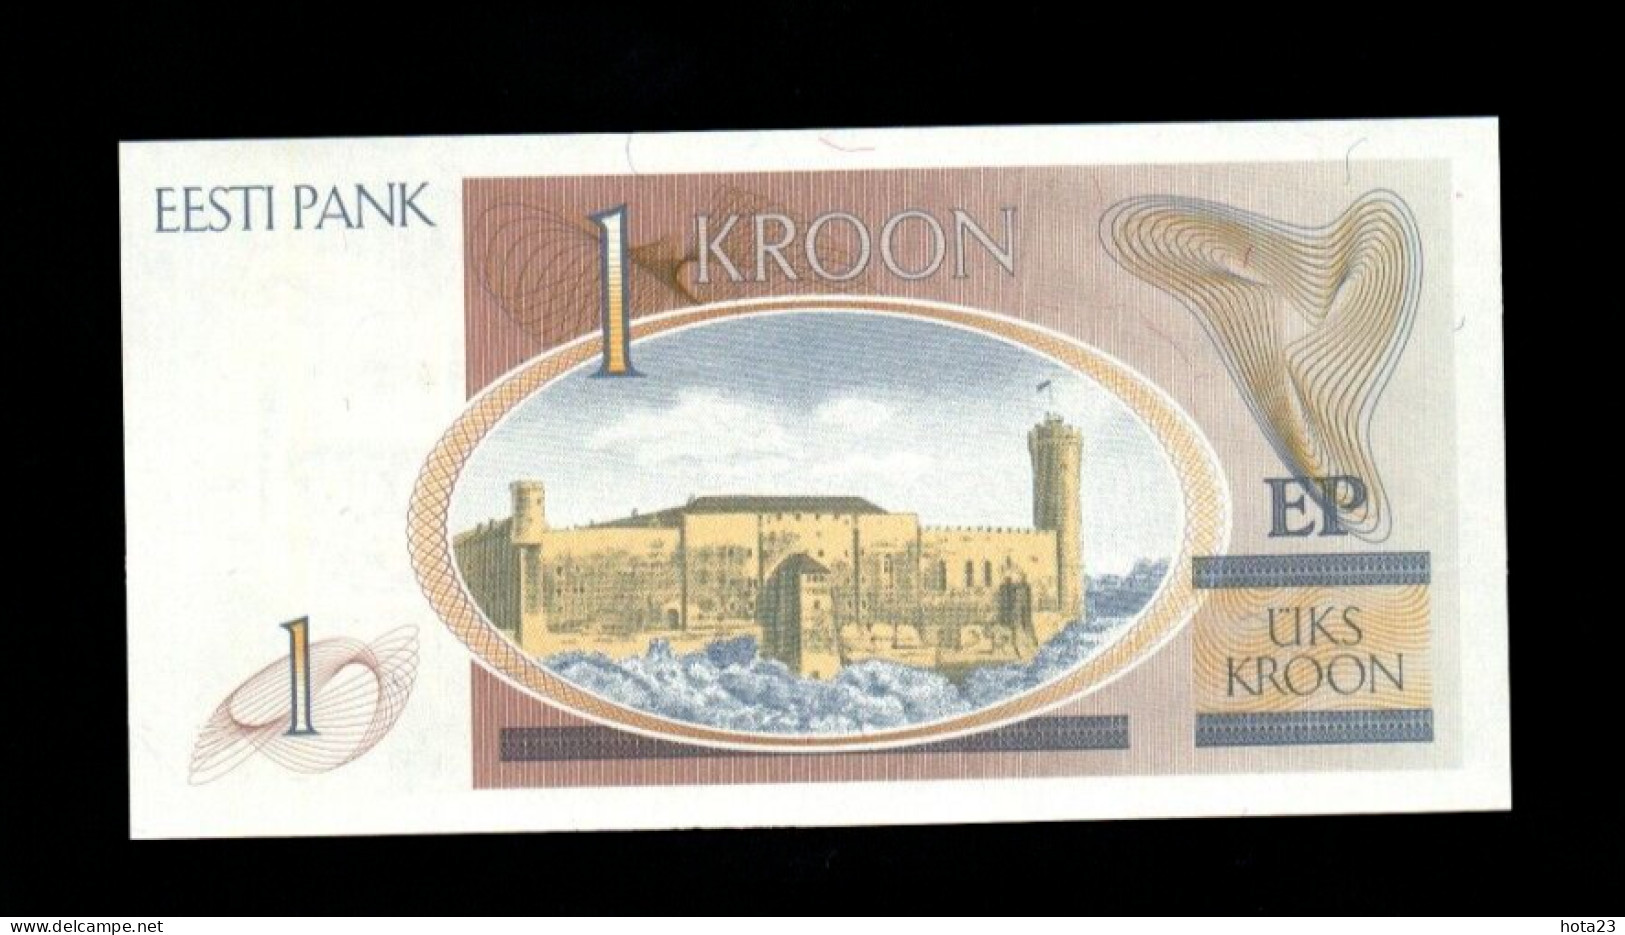 1 KROON UNC BANKNOTE FROM ESTONIA 1992 PICK-69 - Estonie